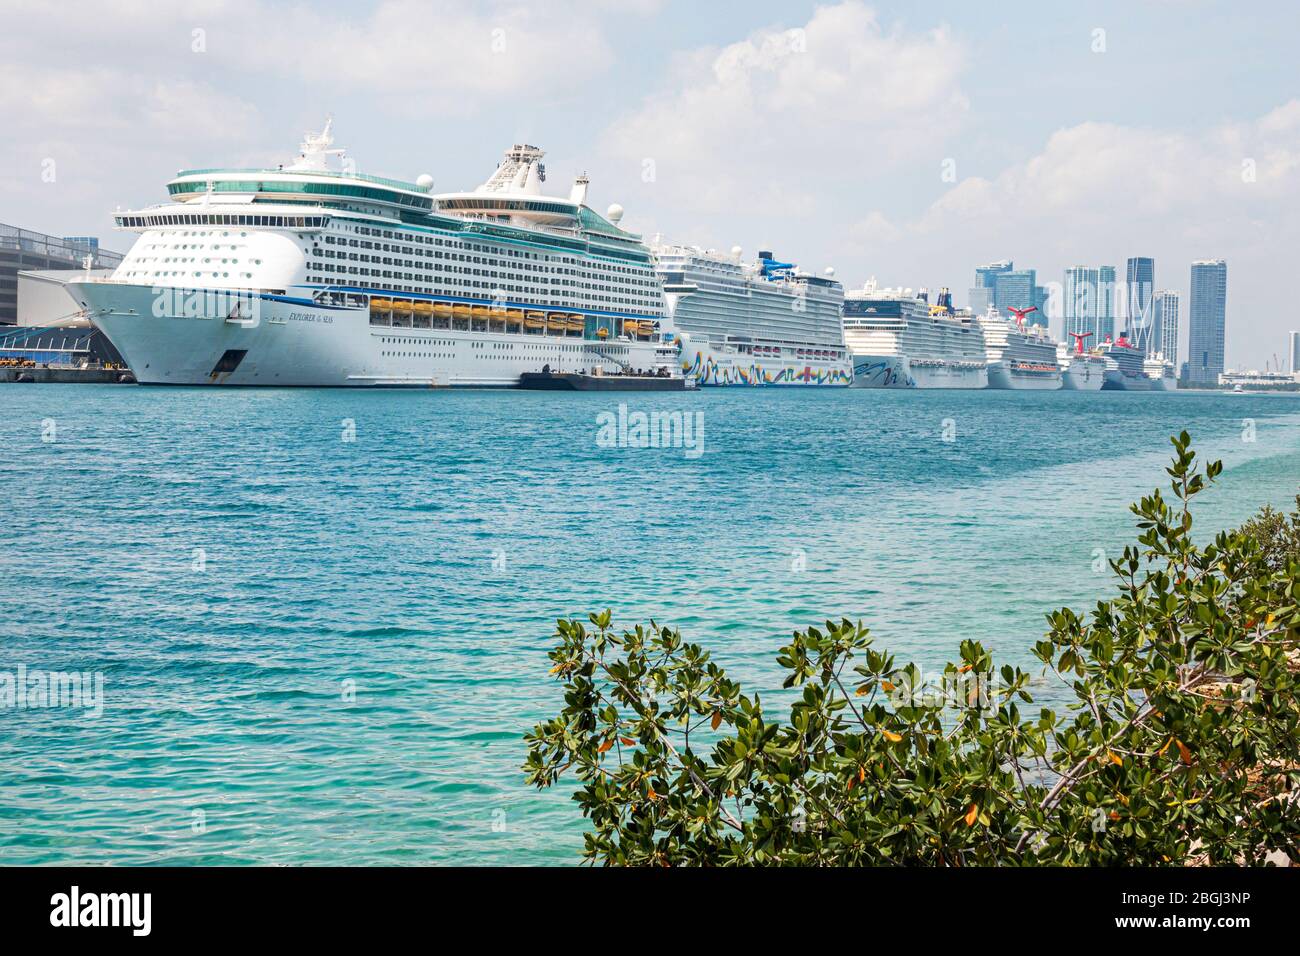 Miami Beach, Florida, Regierung schneidet Wasser in der Biscayne Bay, Hafen von Miami, Schiffe von Kreuzfahrtschiffen dockten leer an, Coronavirus Covid-19 Pandemiekrise, economii Stockfoto